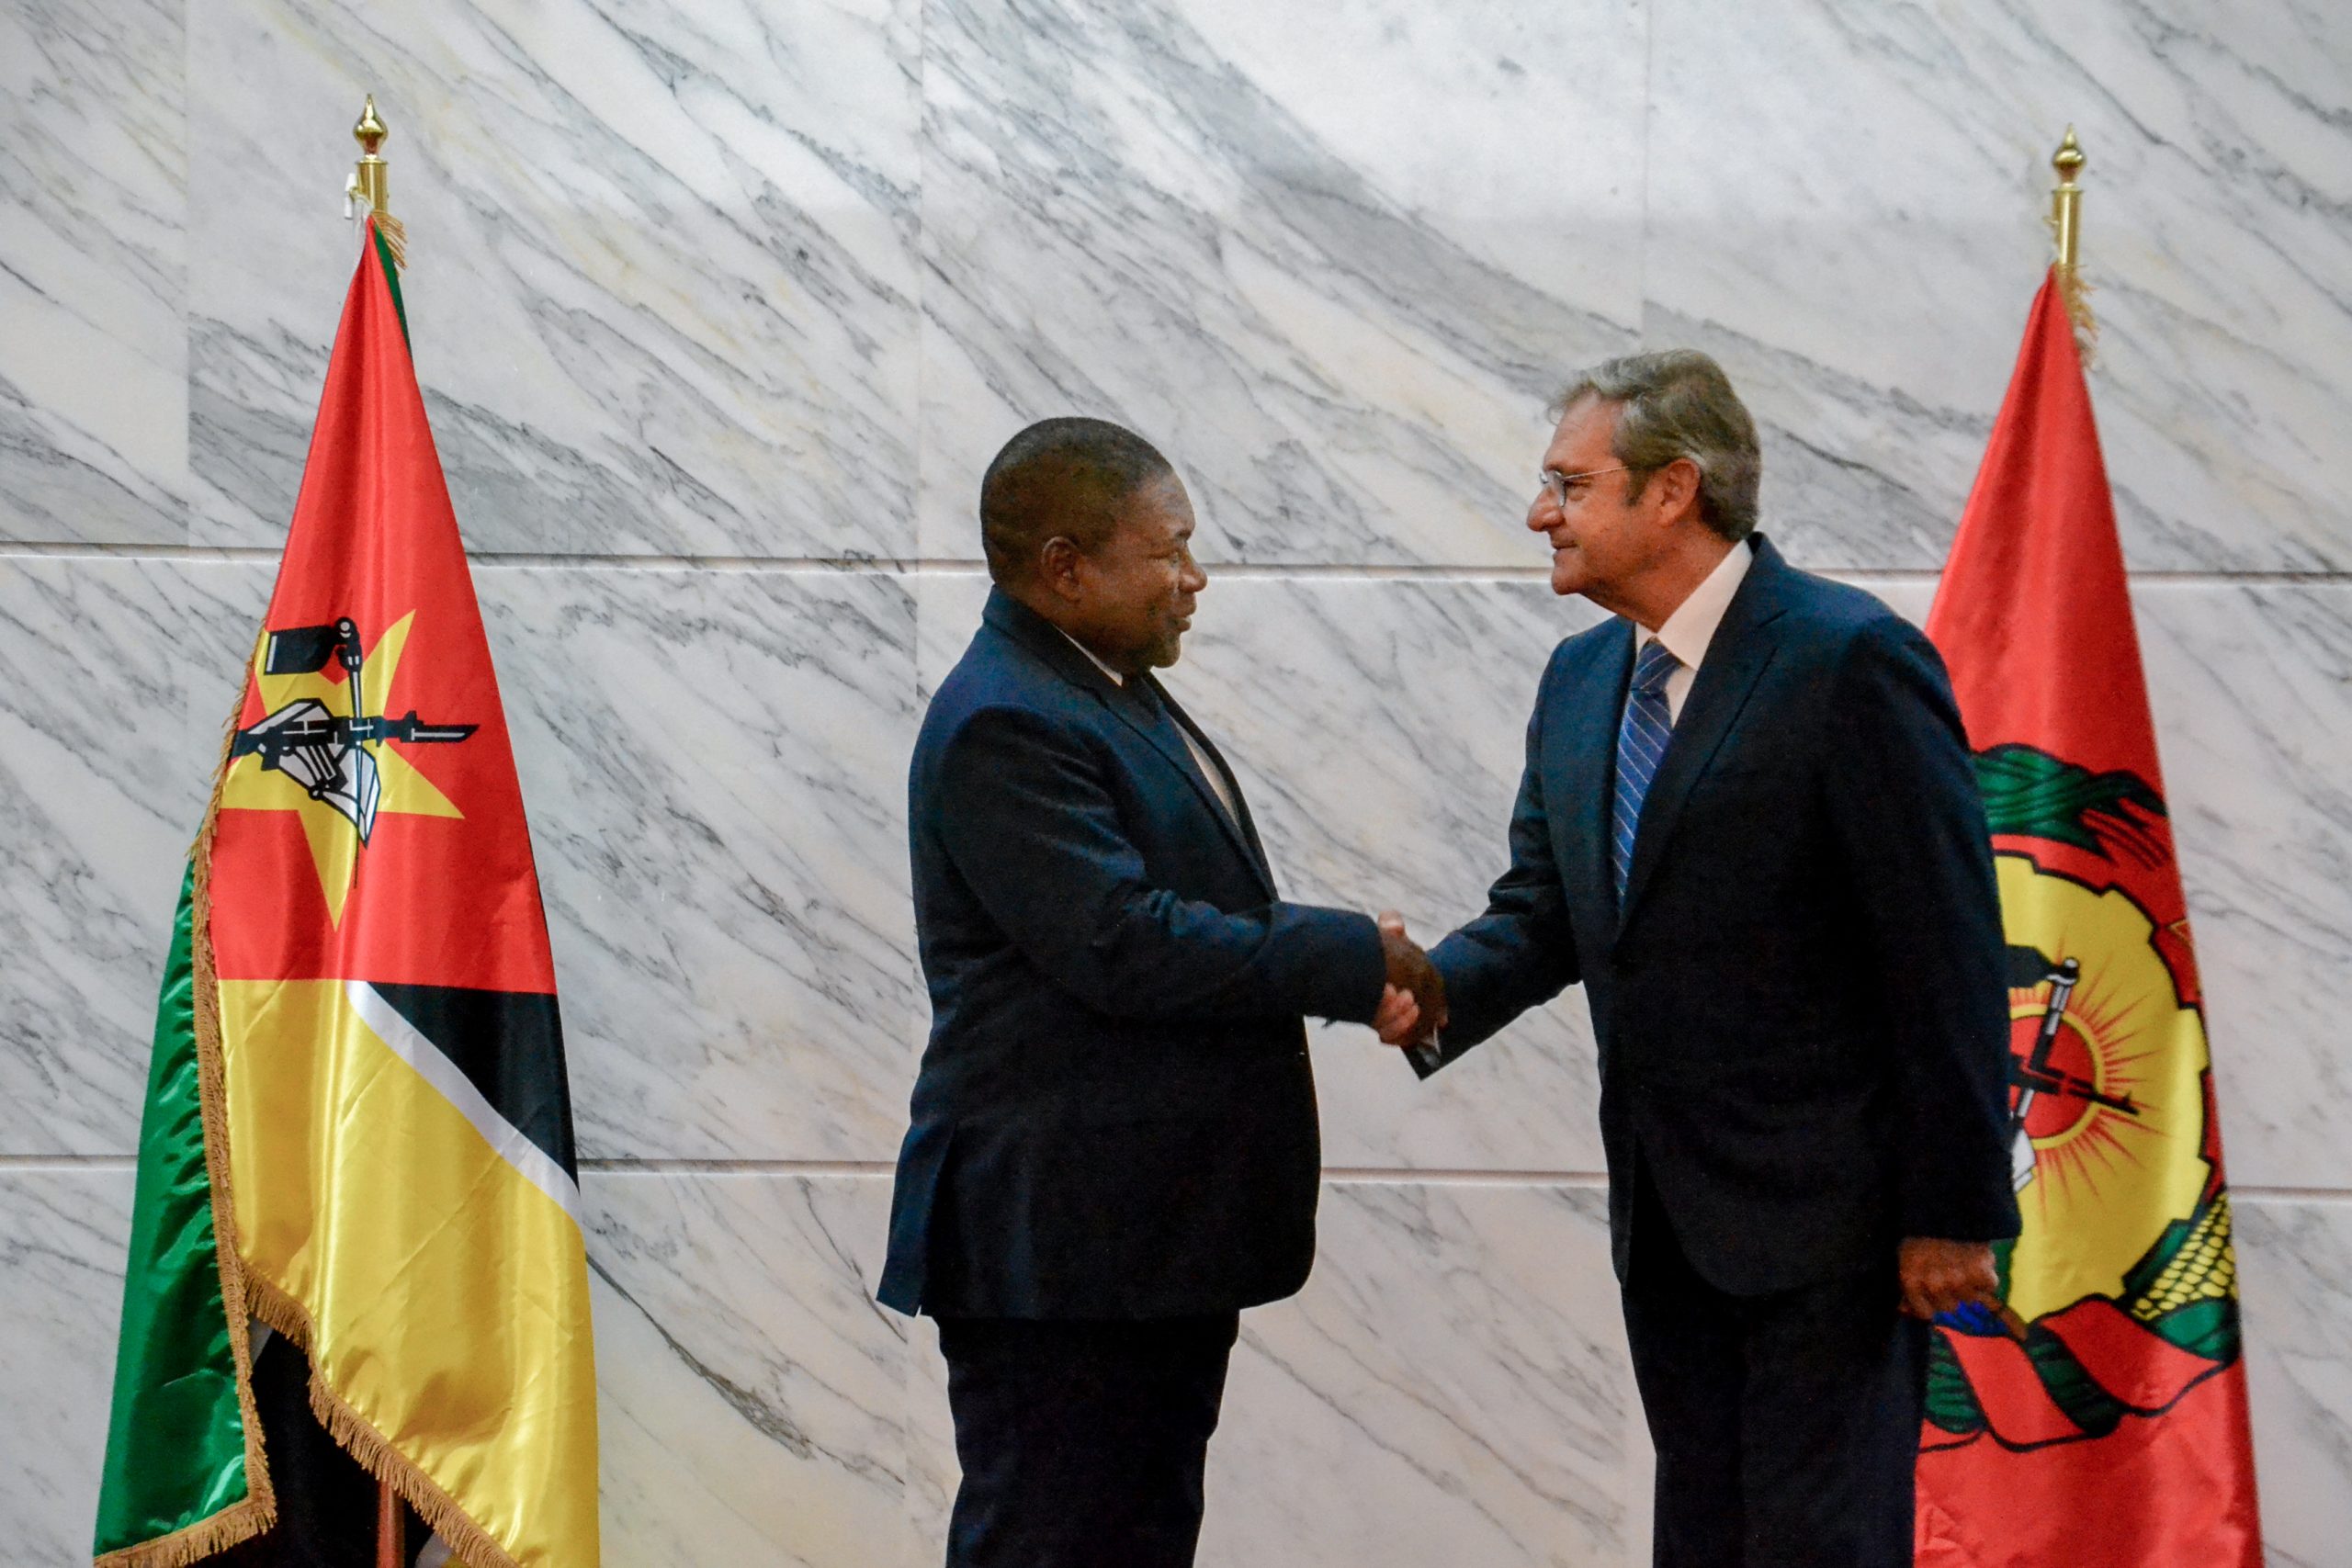 Le nouvel ambassadeur de l’Ordre souverain de Malte a présenté ses lettres de créance au président de la République du Mozambique